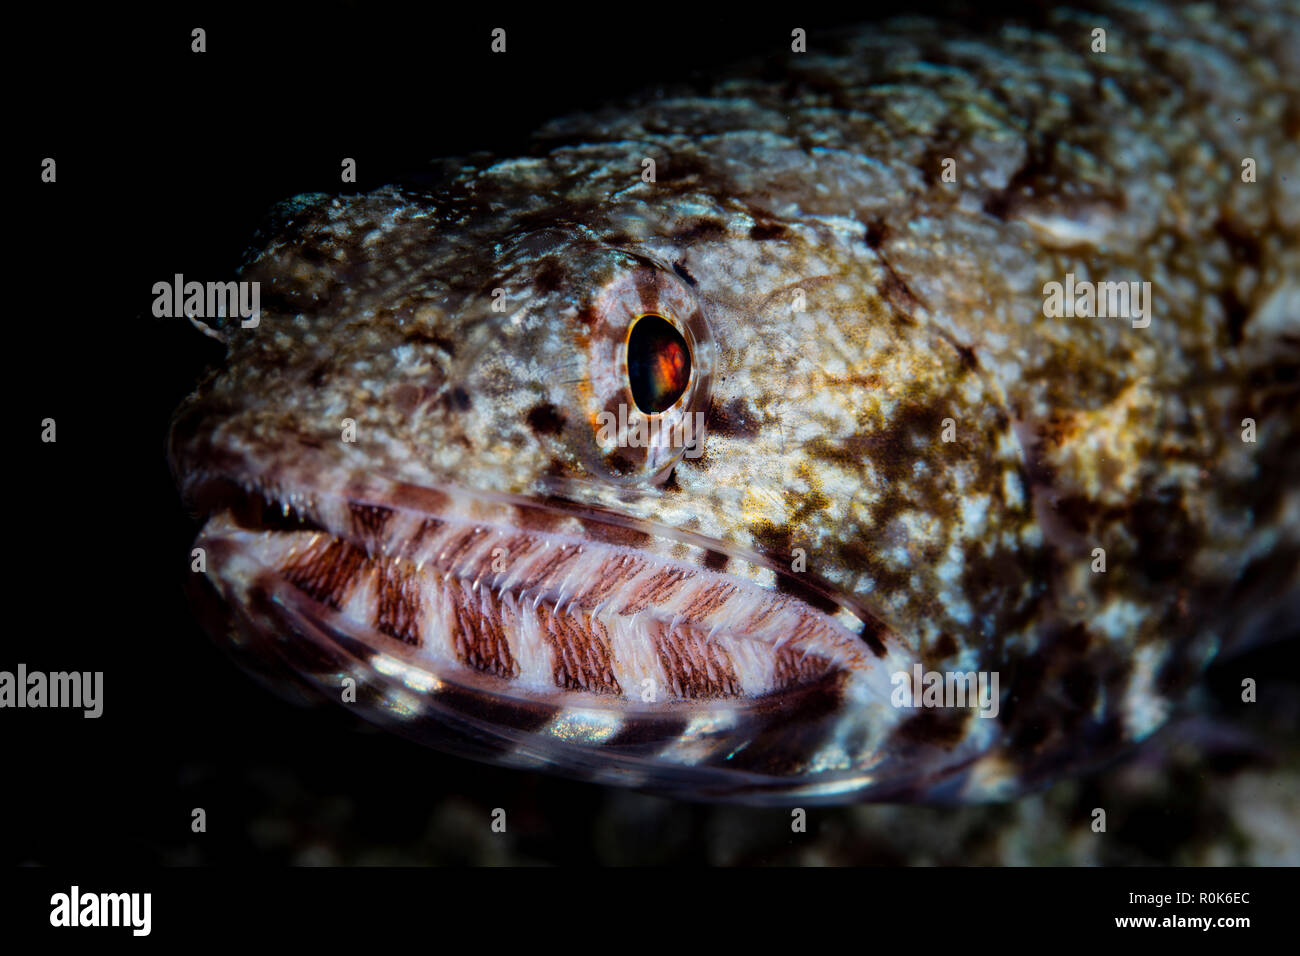 Ein Riff lizardfish wartet Beute aufzulauern. Stockfoto